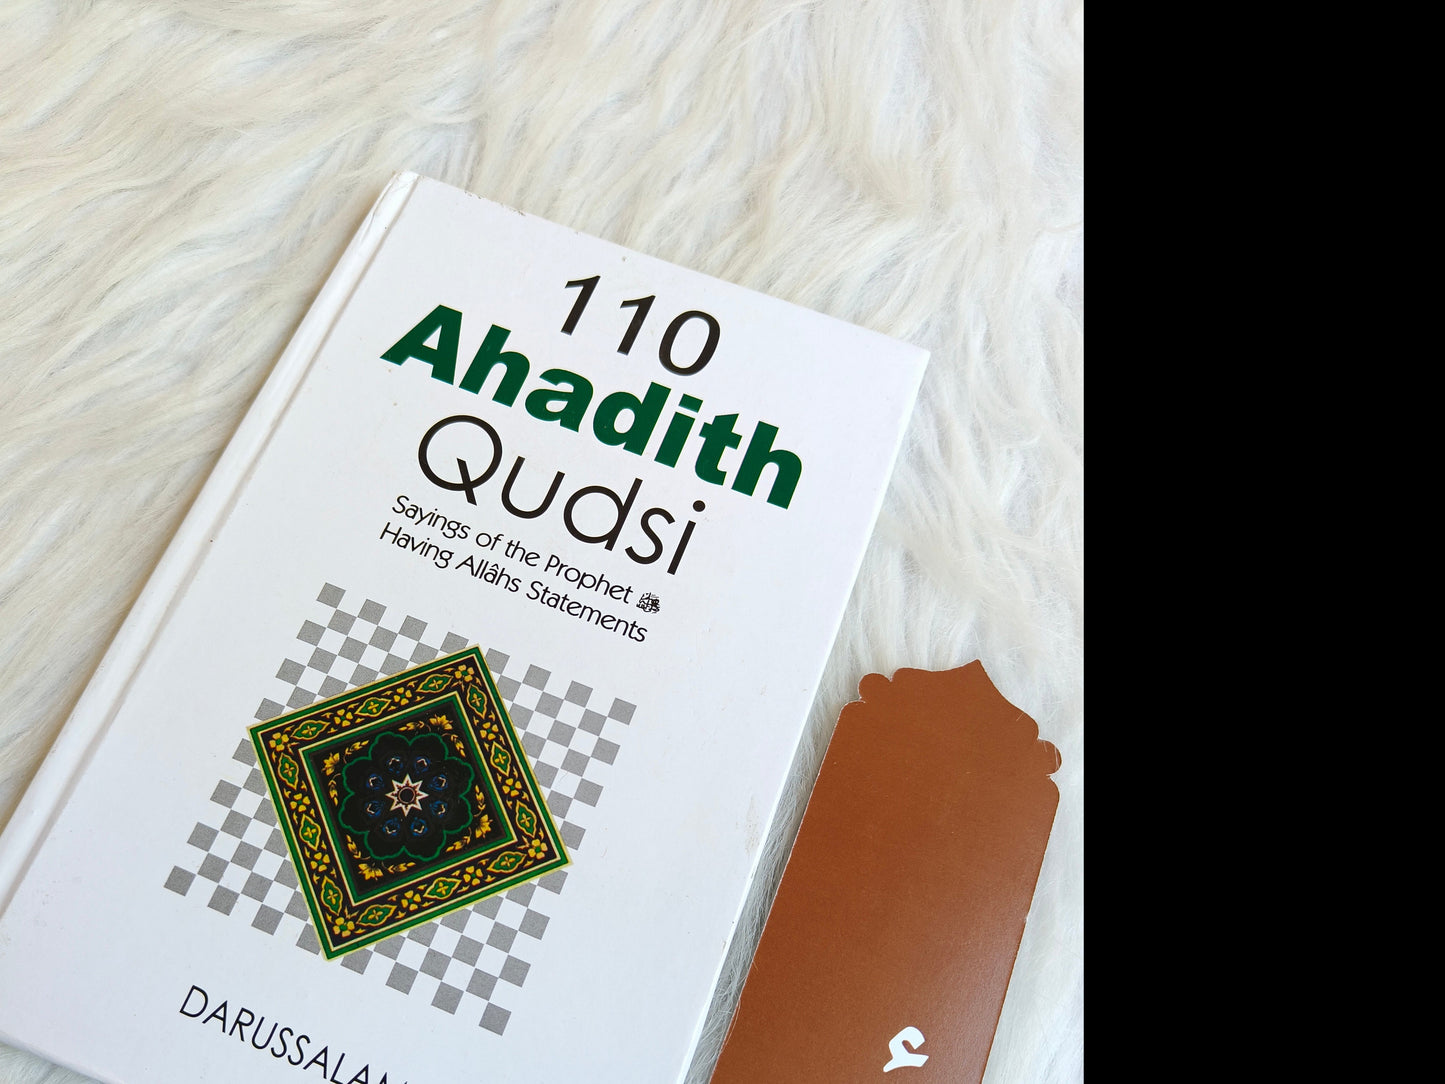 101 Ahadith Qudsi - alifthebookstore